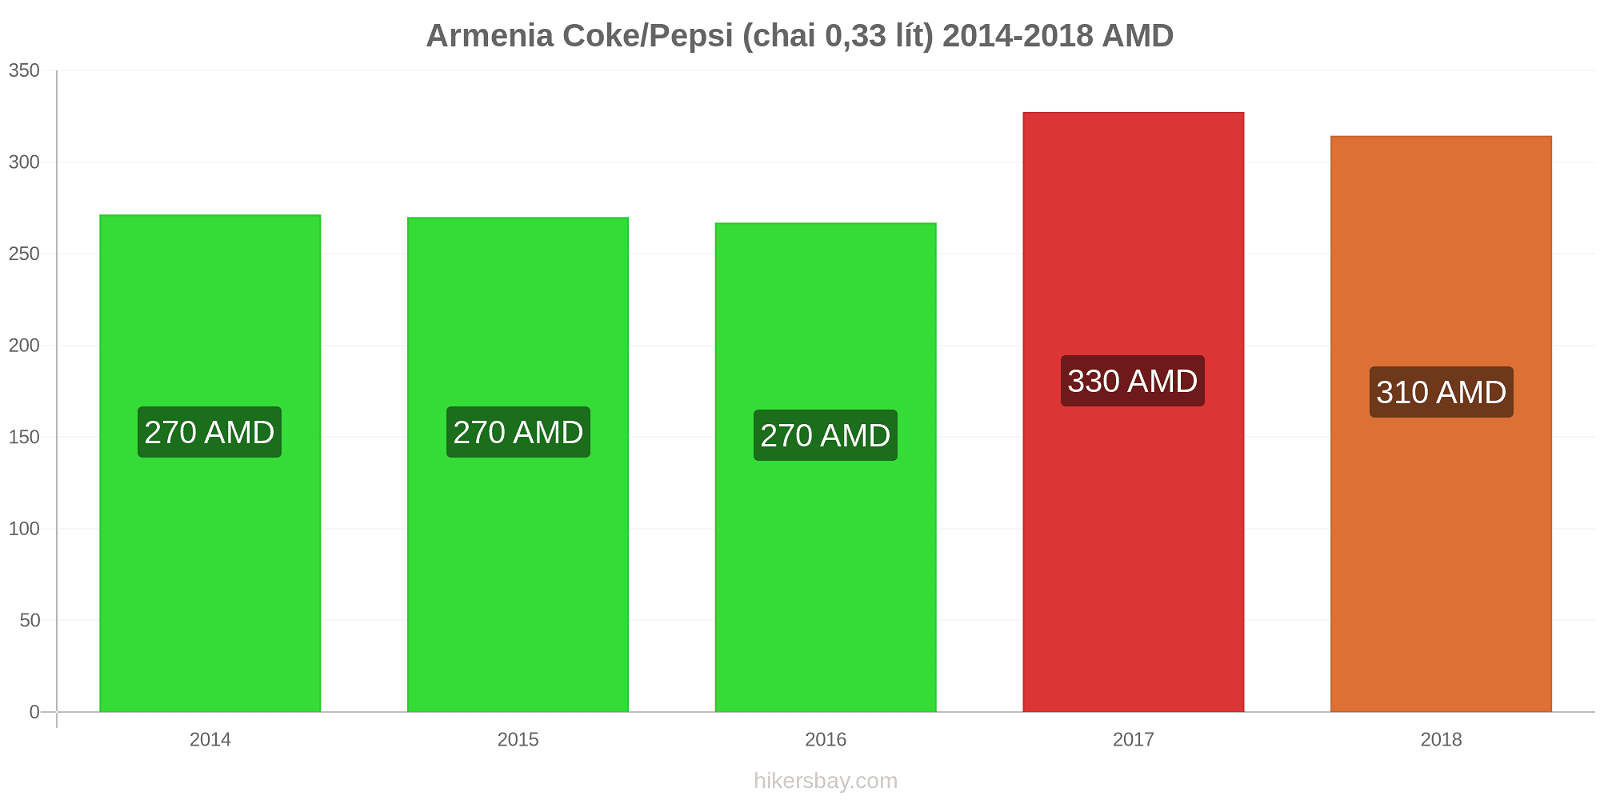 Armenia thay đổi giá cả Coca-Cola/Pepsi (chai 0.33 lít) hikersbay.com